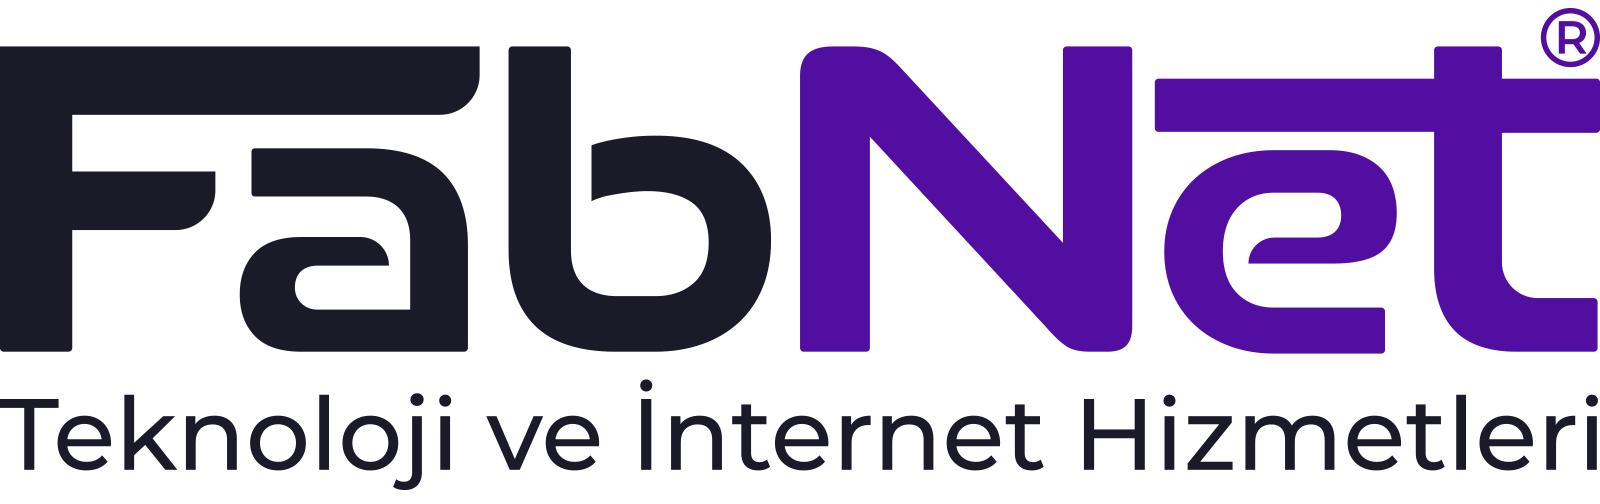 FabNet Teknoloji ve İnternet Hizmetleri